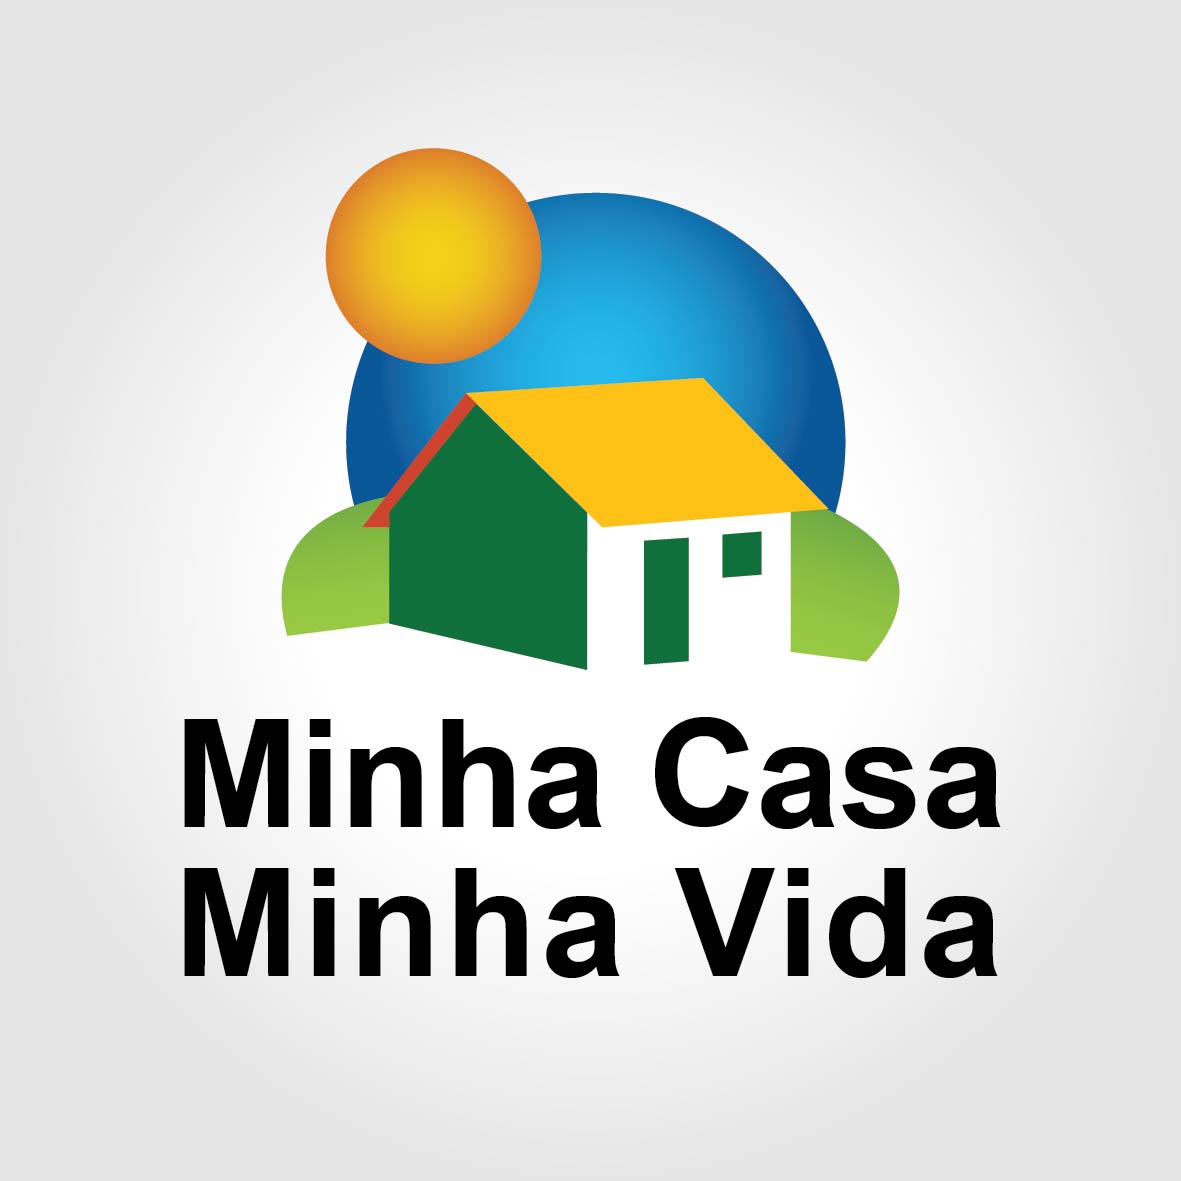 https://atrincorporadora.com.br/wp-content/uploads/2020/03/Minha-Casa-Minha-Vida1.jpg